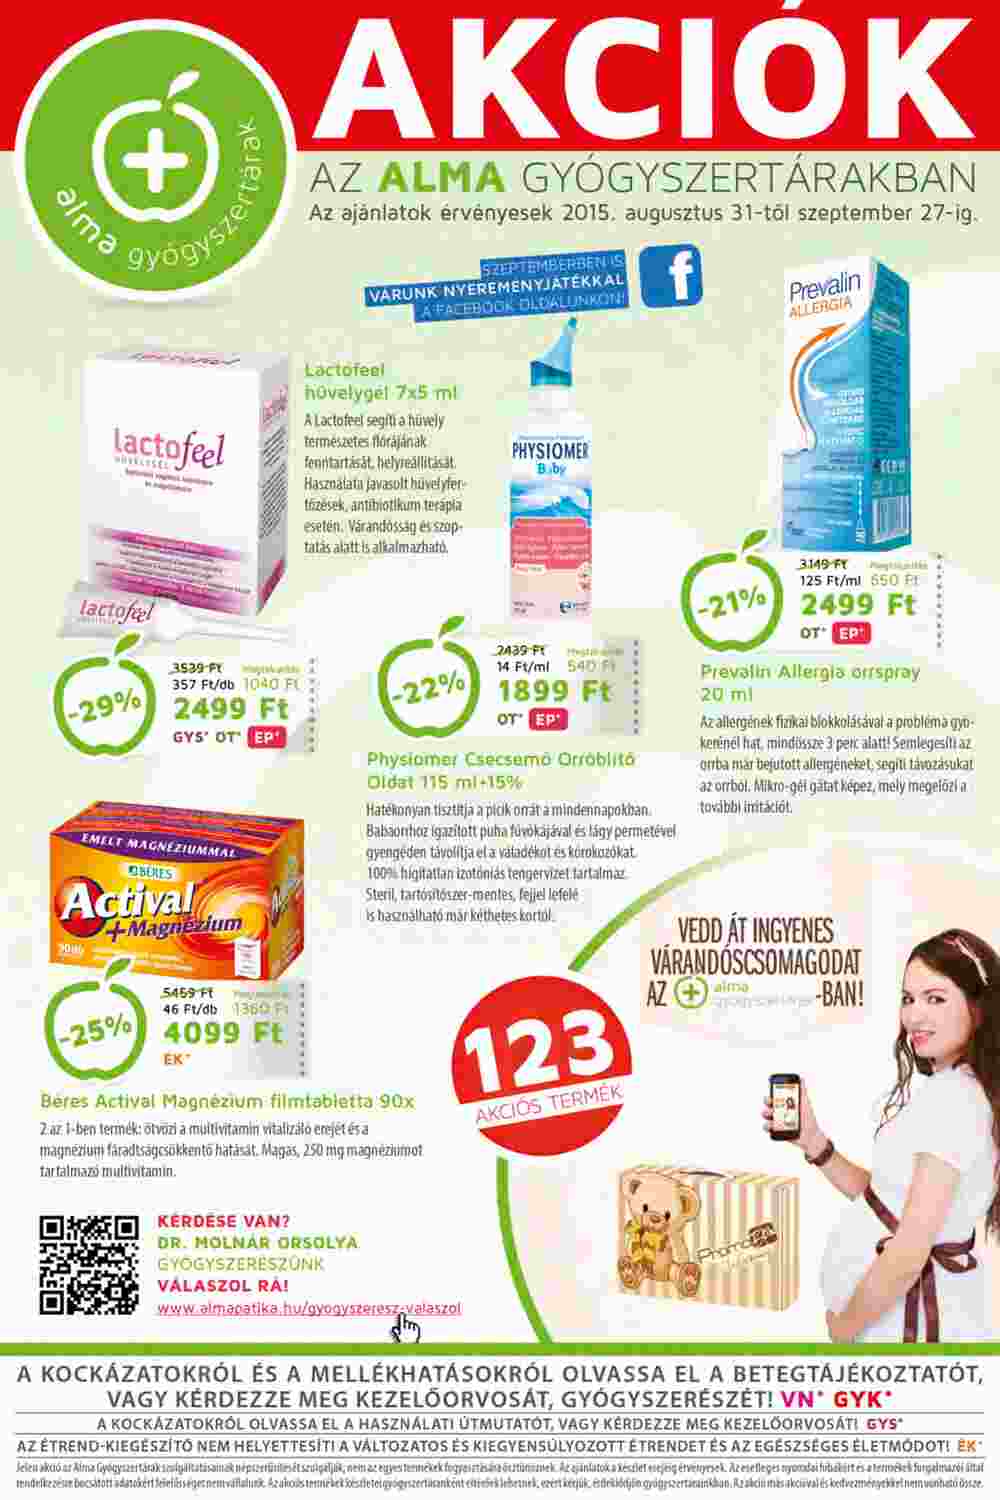 Alma Gyógyszertárak akciós újság 2015.09.24-től - 1. oldal.